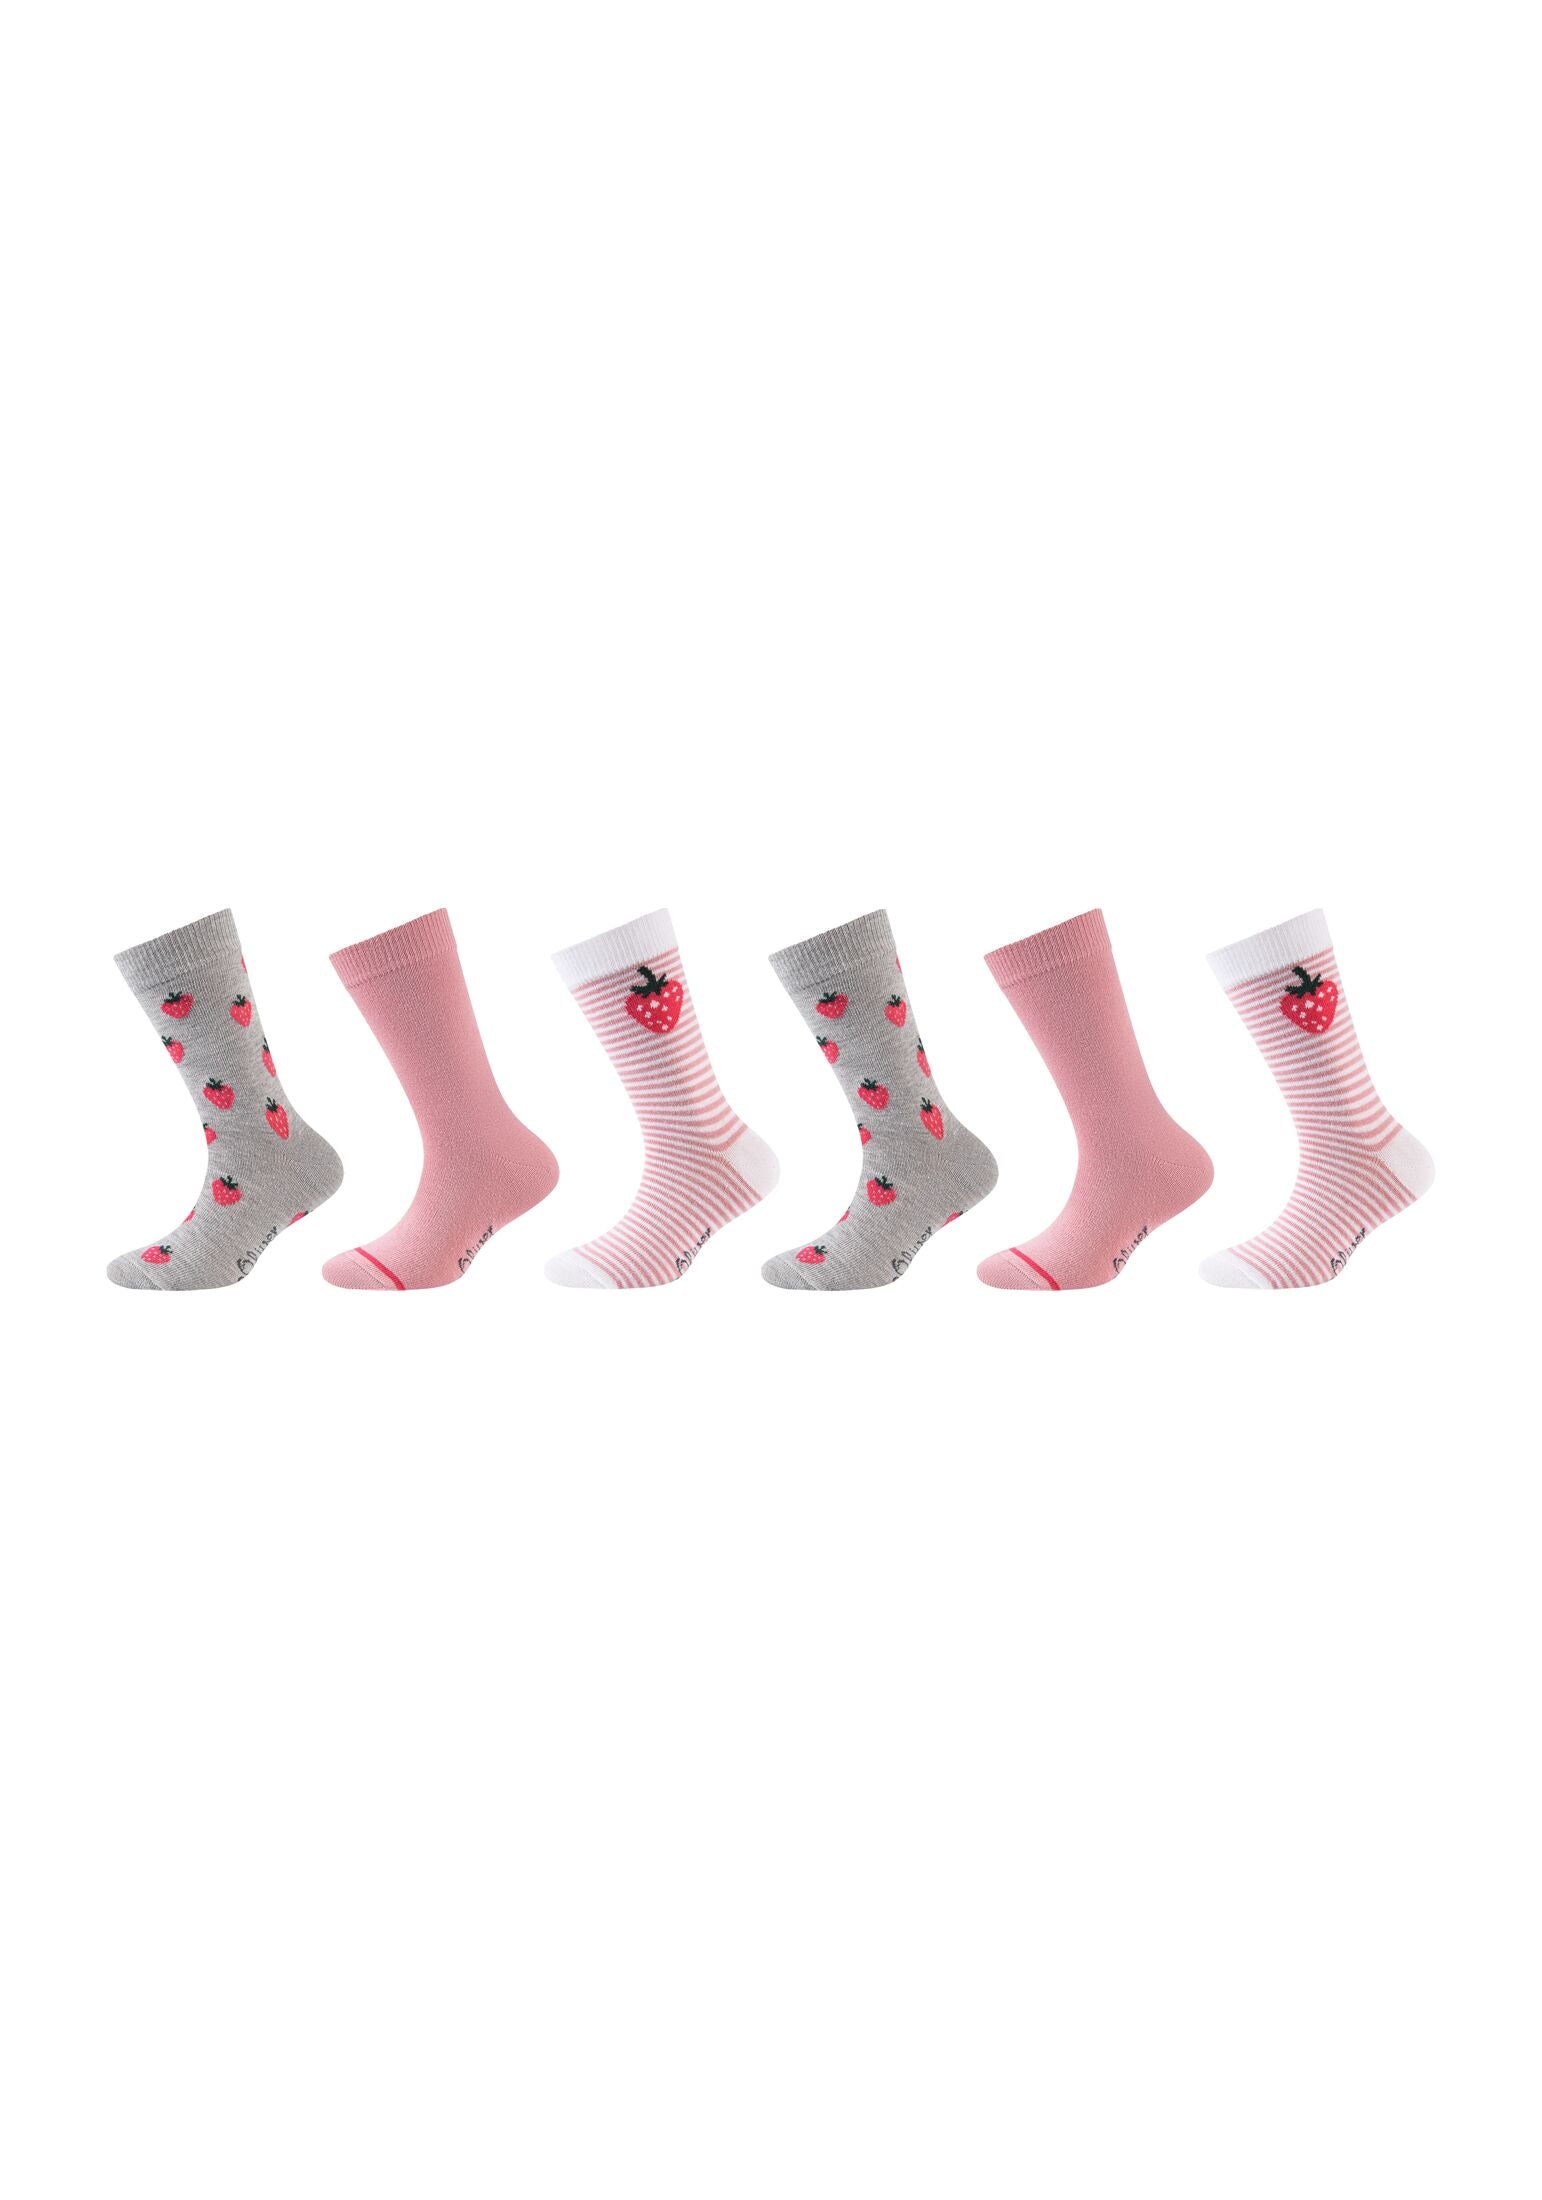 s.Oliver Kinder Socken originals Bio-Baumwolle Fruit 6er Pack sea pink